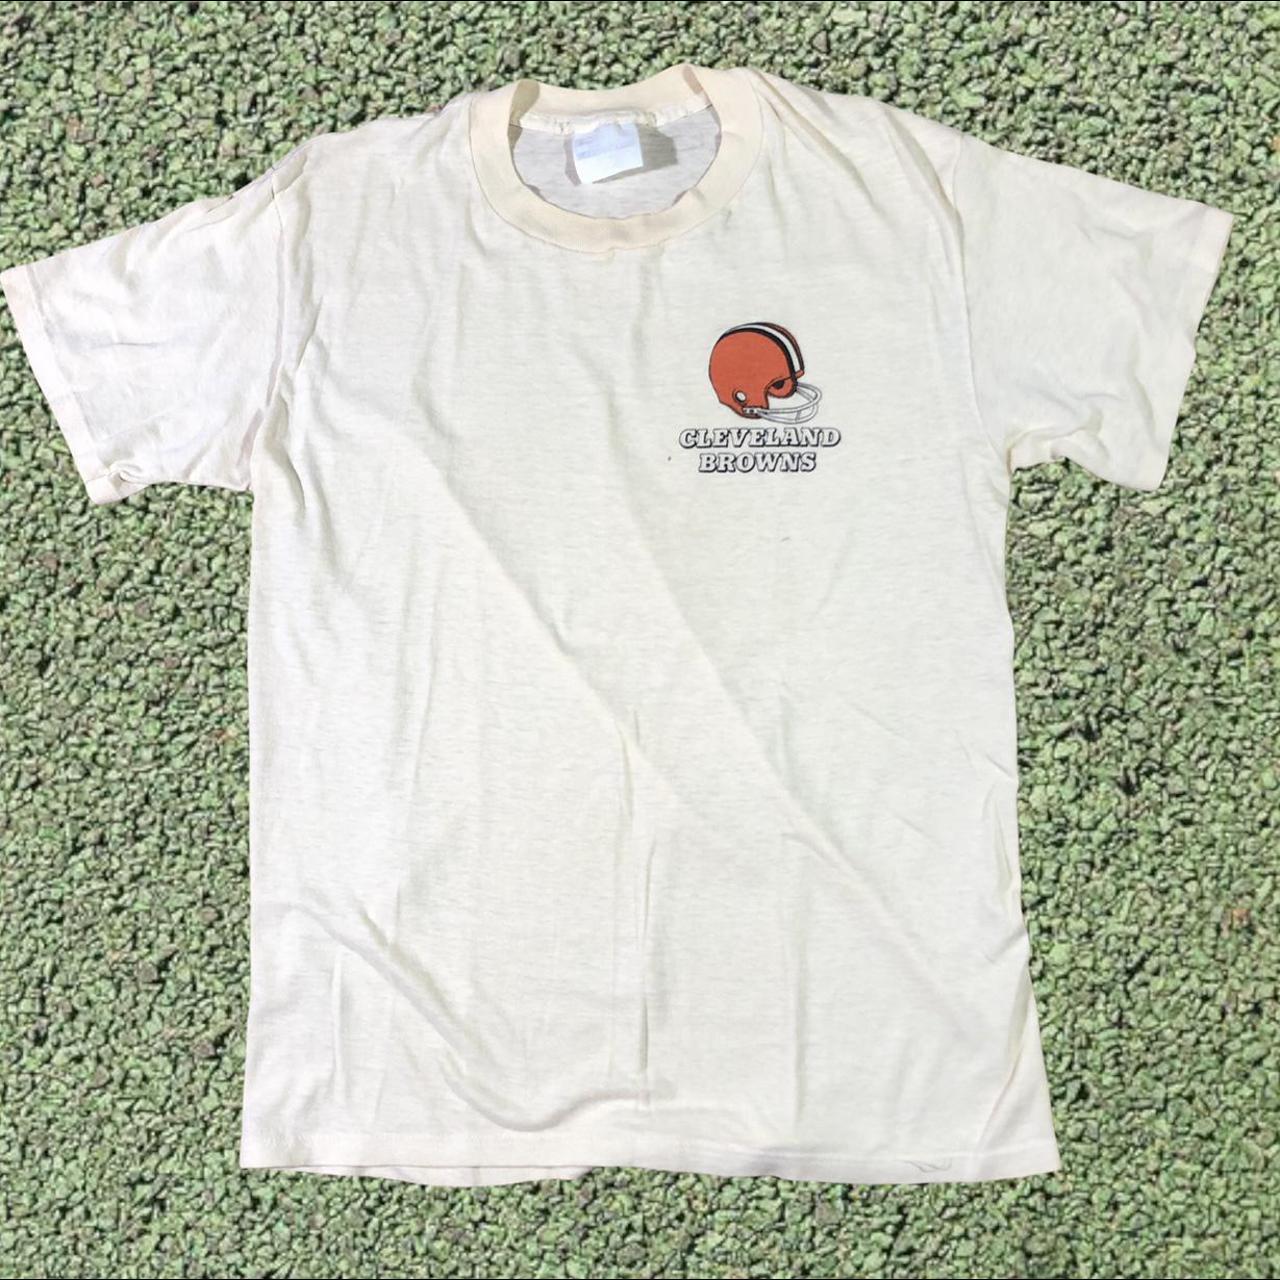 Vintage 80s NFL Cleveland Browns T-Shirt. Single - Depop